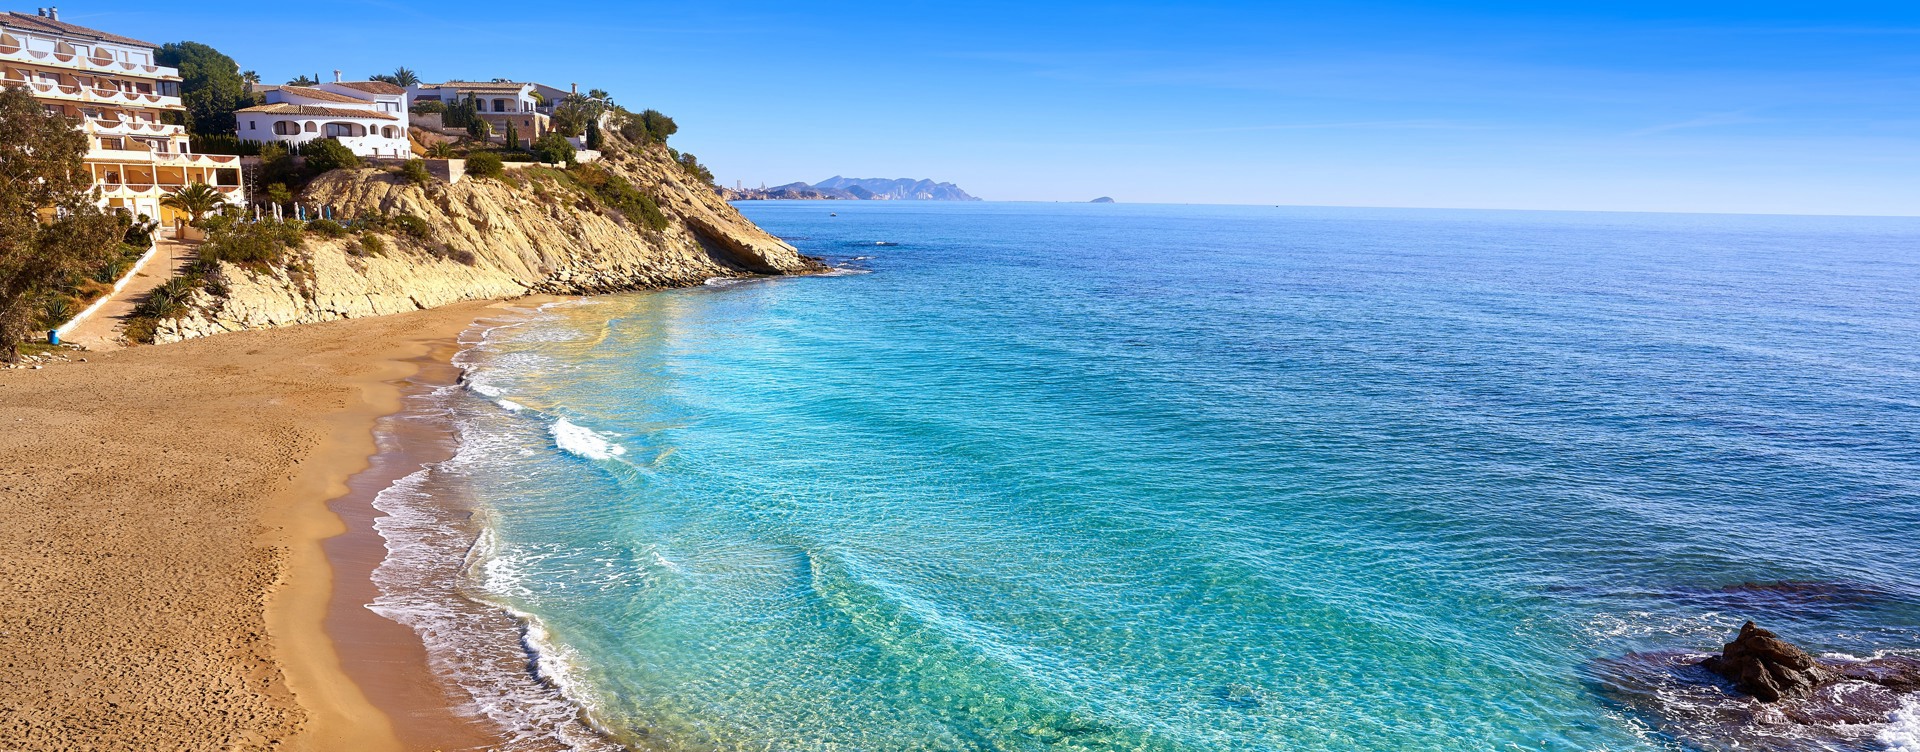 Entdecken Sie die schöne Umgebung an der spanischen Küste
rund um das Dormio Resort Costa Blanca